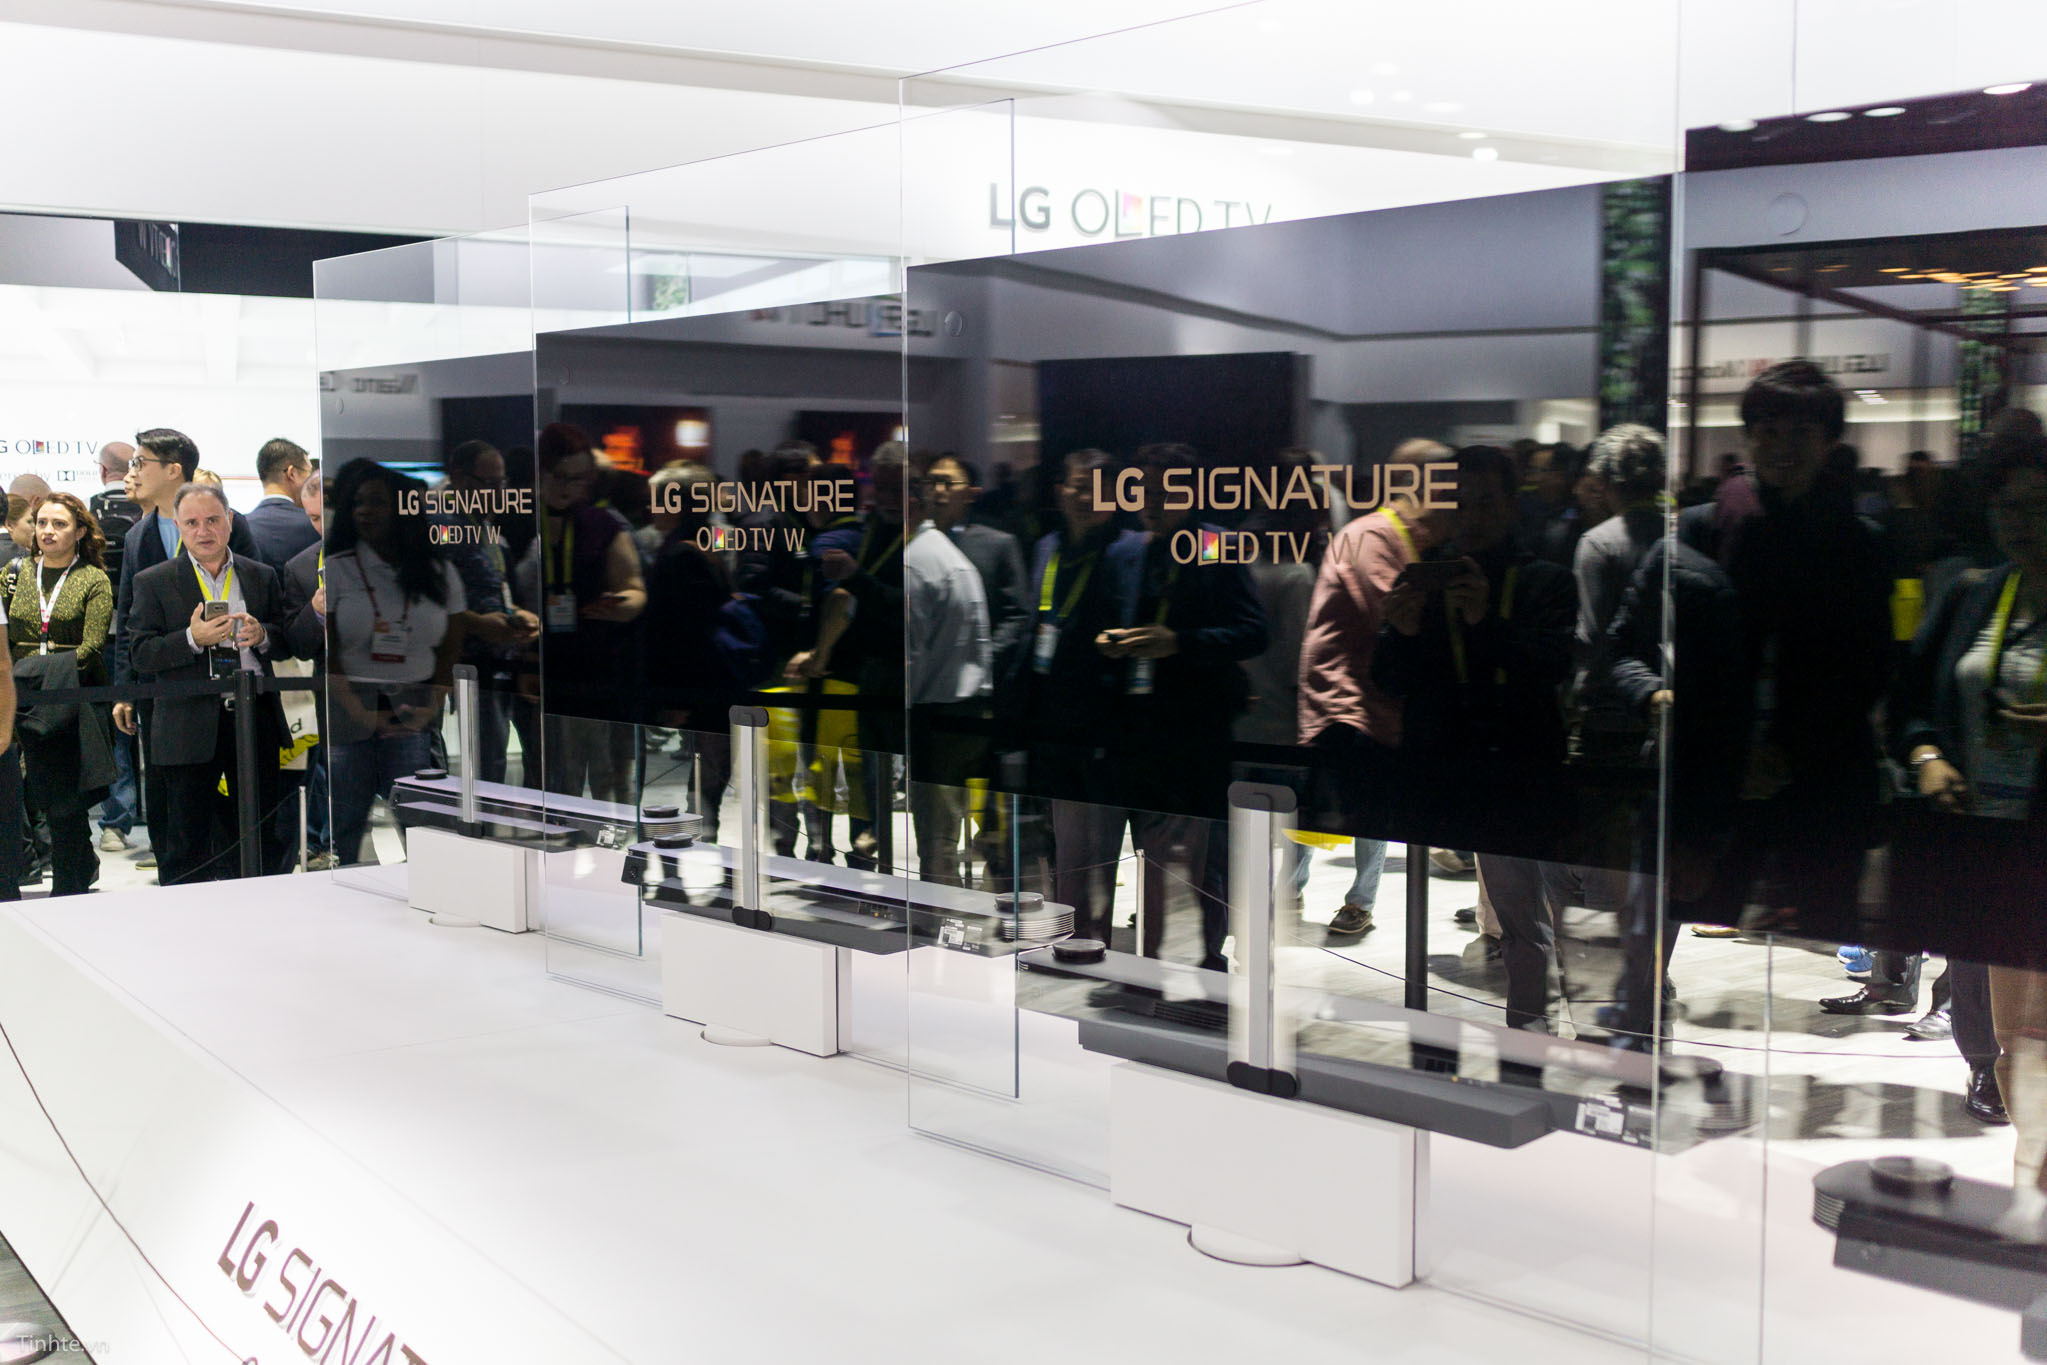 LG-Signature-OLED-TV-W-tinhte-1.jpg